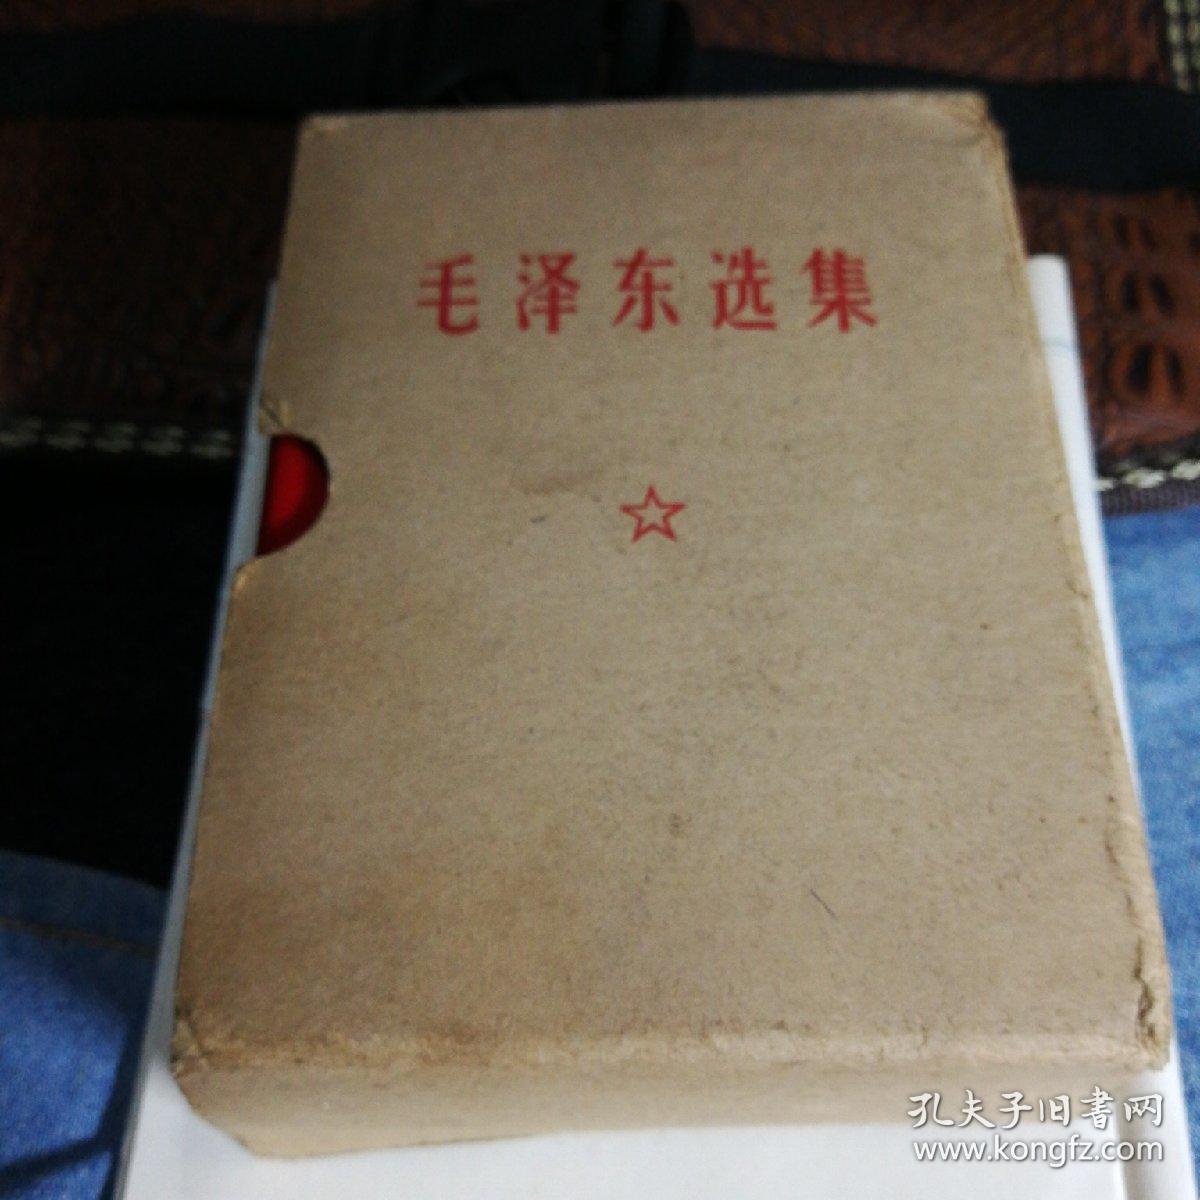 毛泽东选集（一卷本）
1964年4月1版
1967年11月改横排袖珍本1969年10月江西第三次印刷